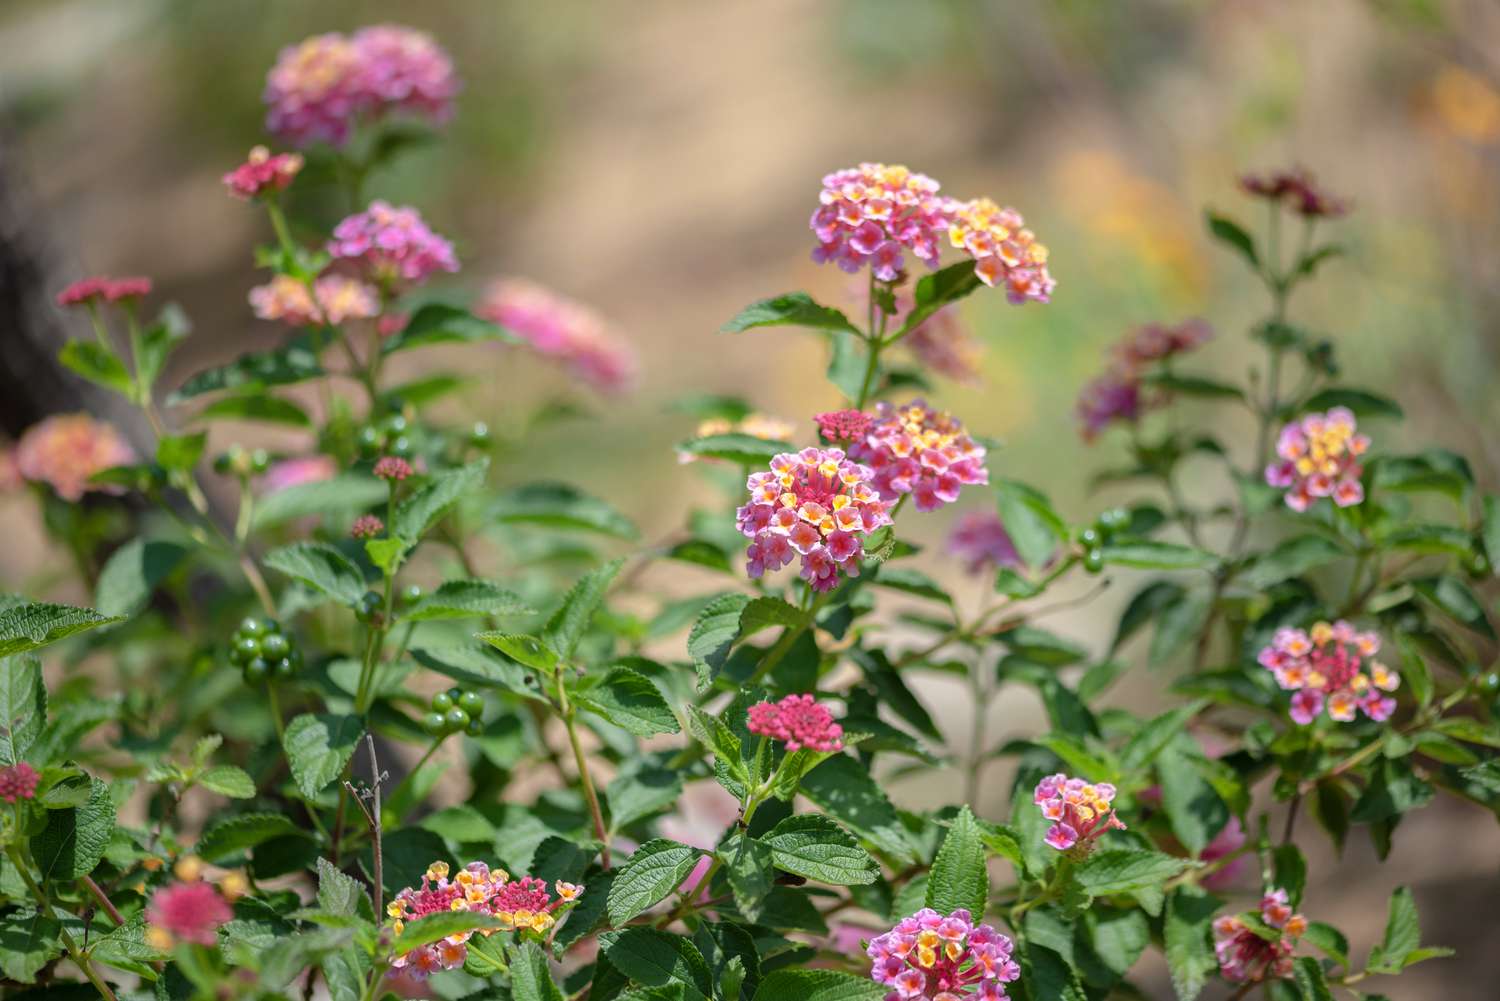 Planta de Lantana con pequeños racimos de flores rosas y amarillas